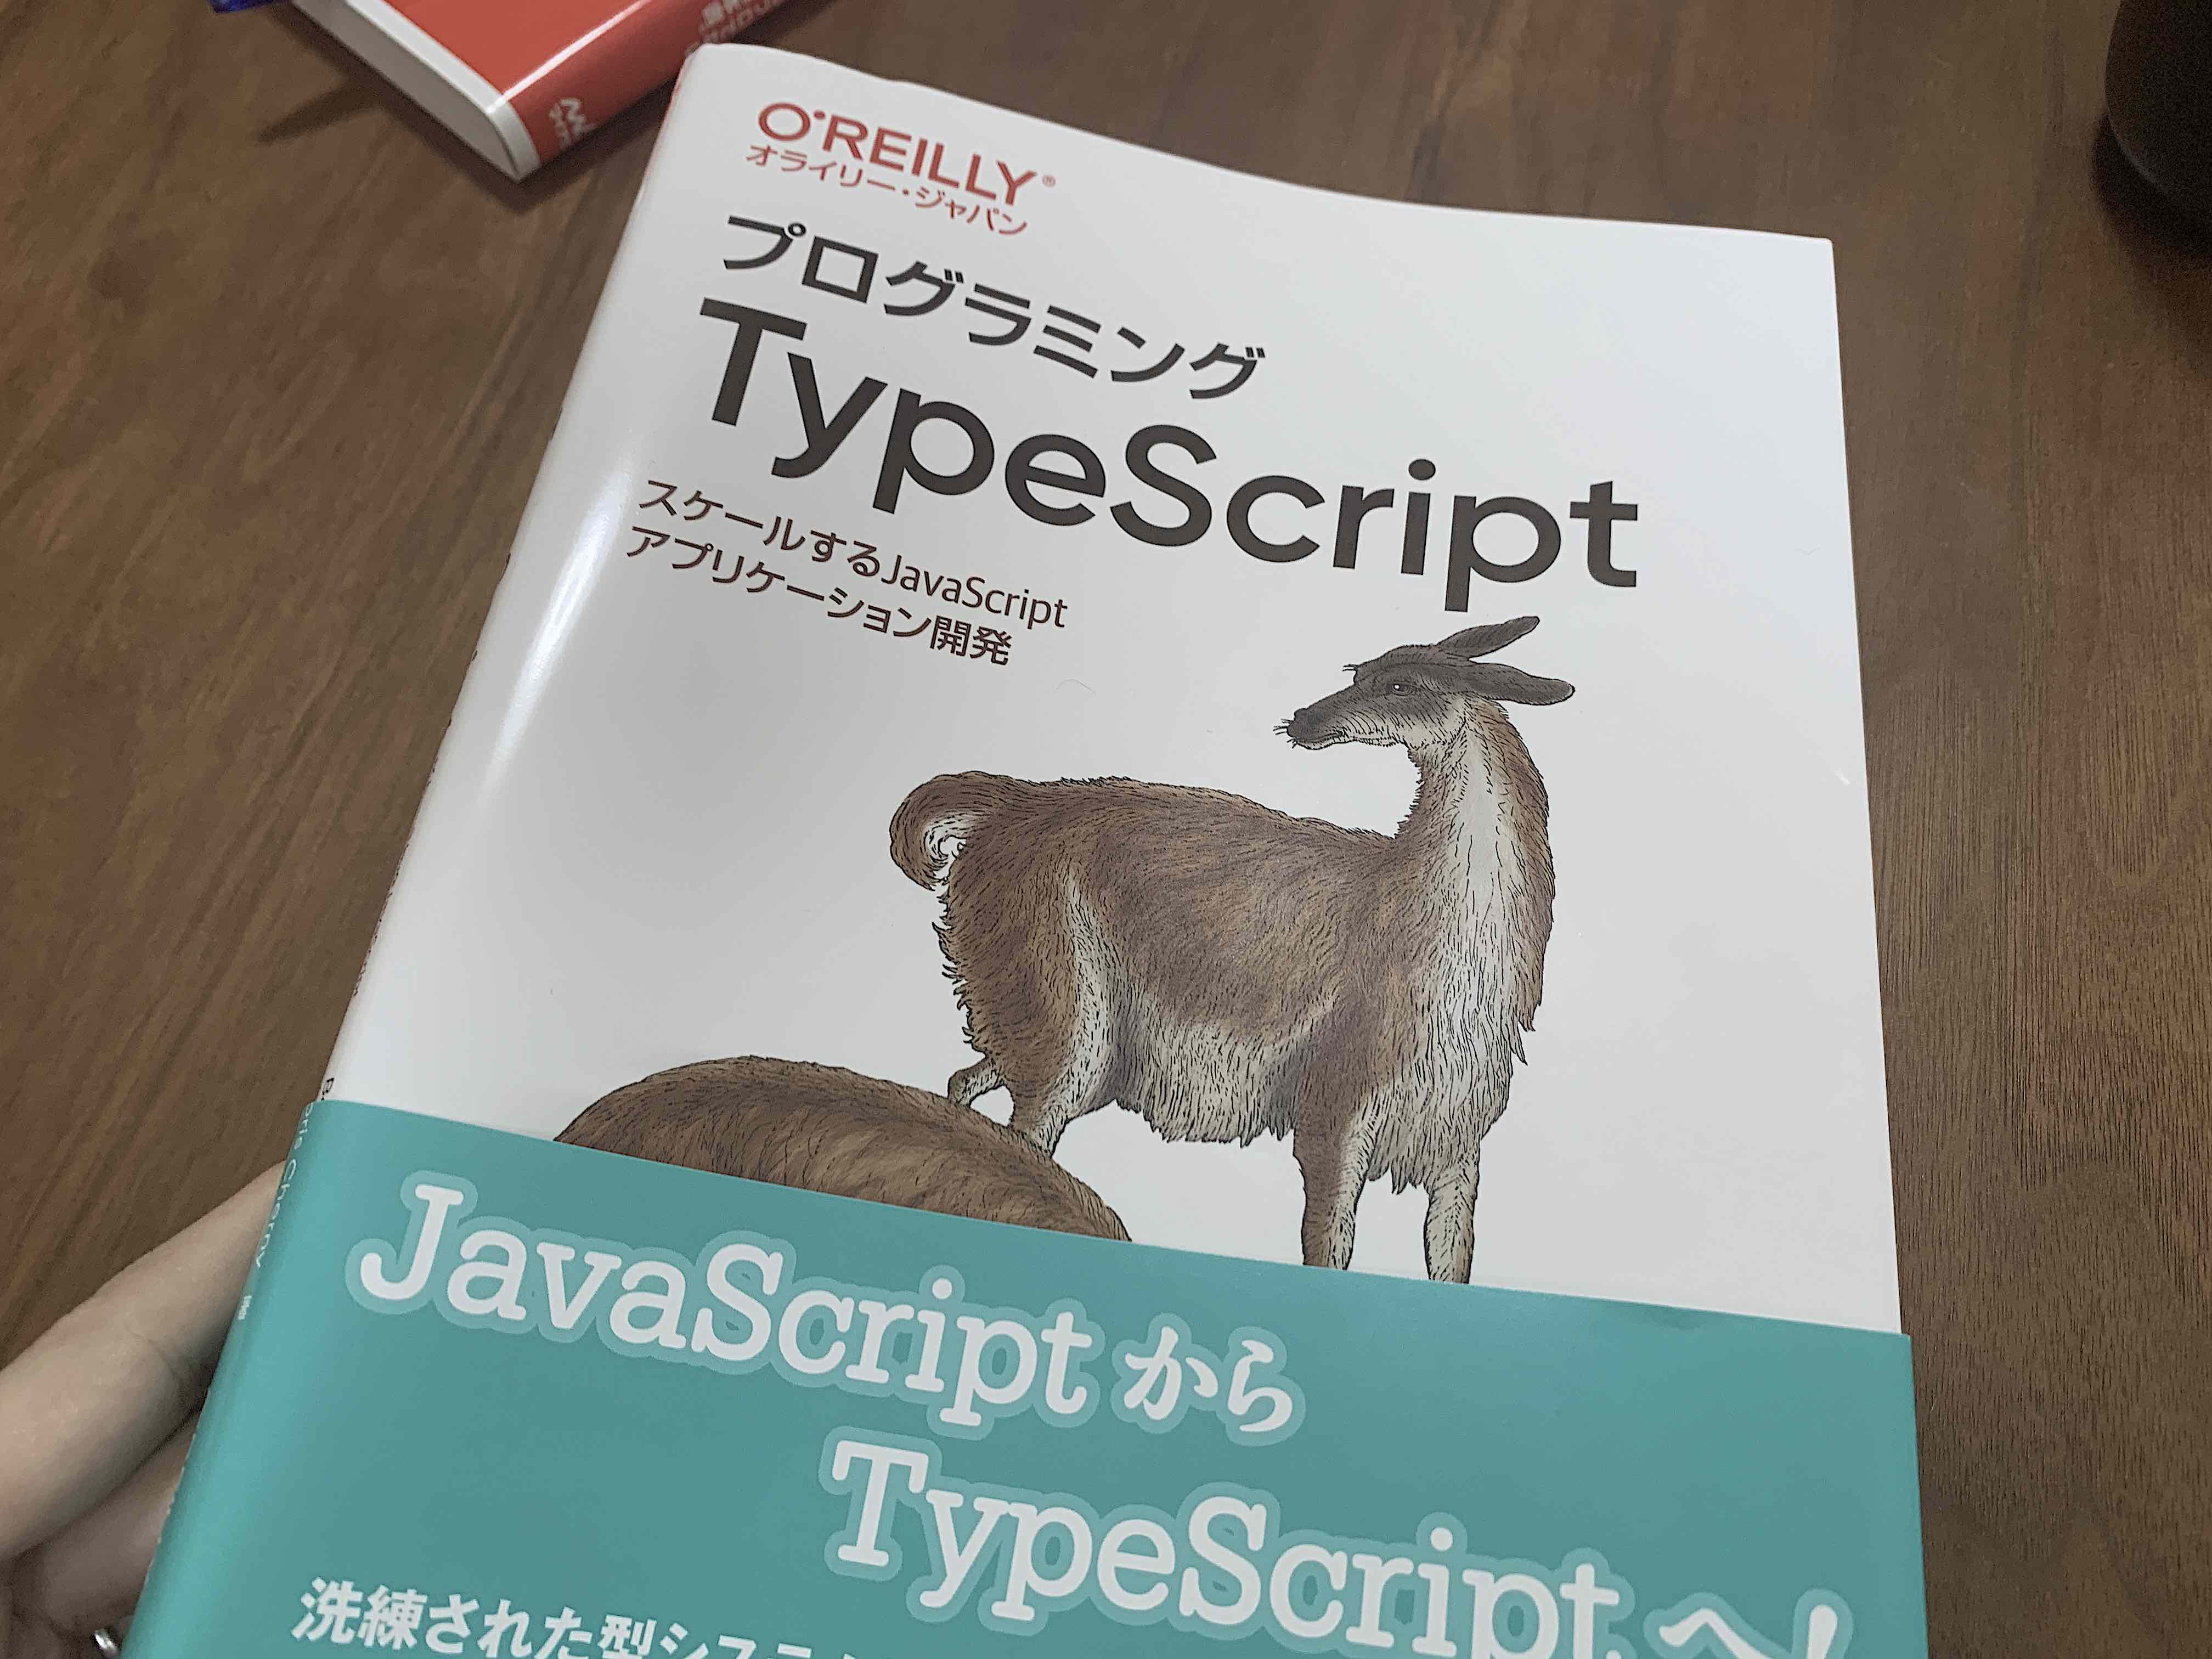 TypeScript の勉強のために『プログラミング TypeScript』を読んでいる